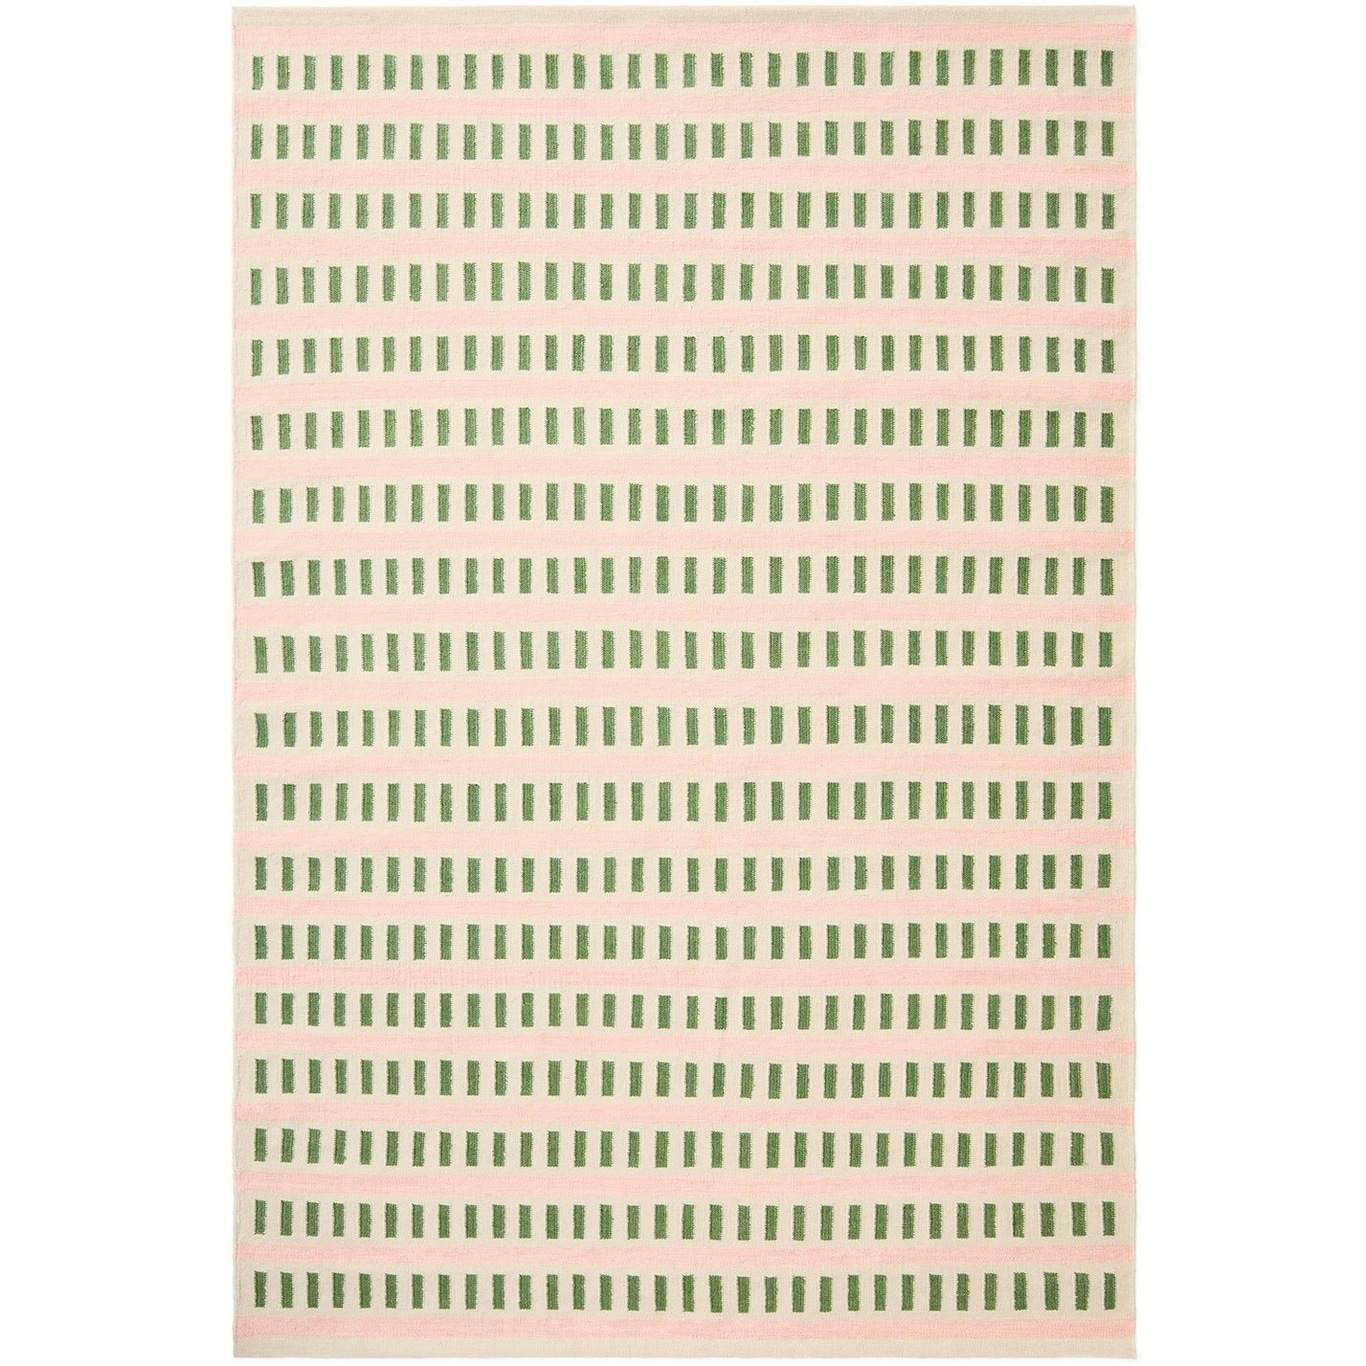 Ladakh Matta Off-white / Cactus Green, 230x320 cm